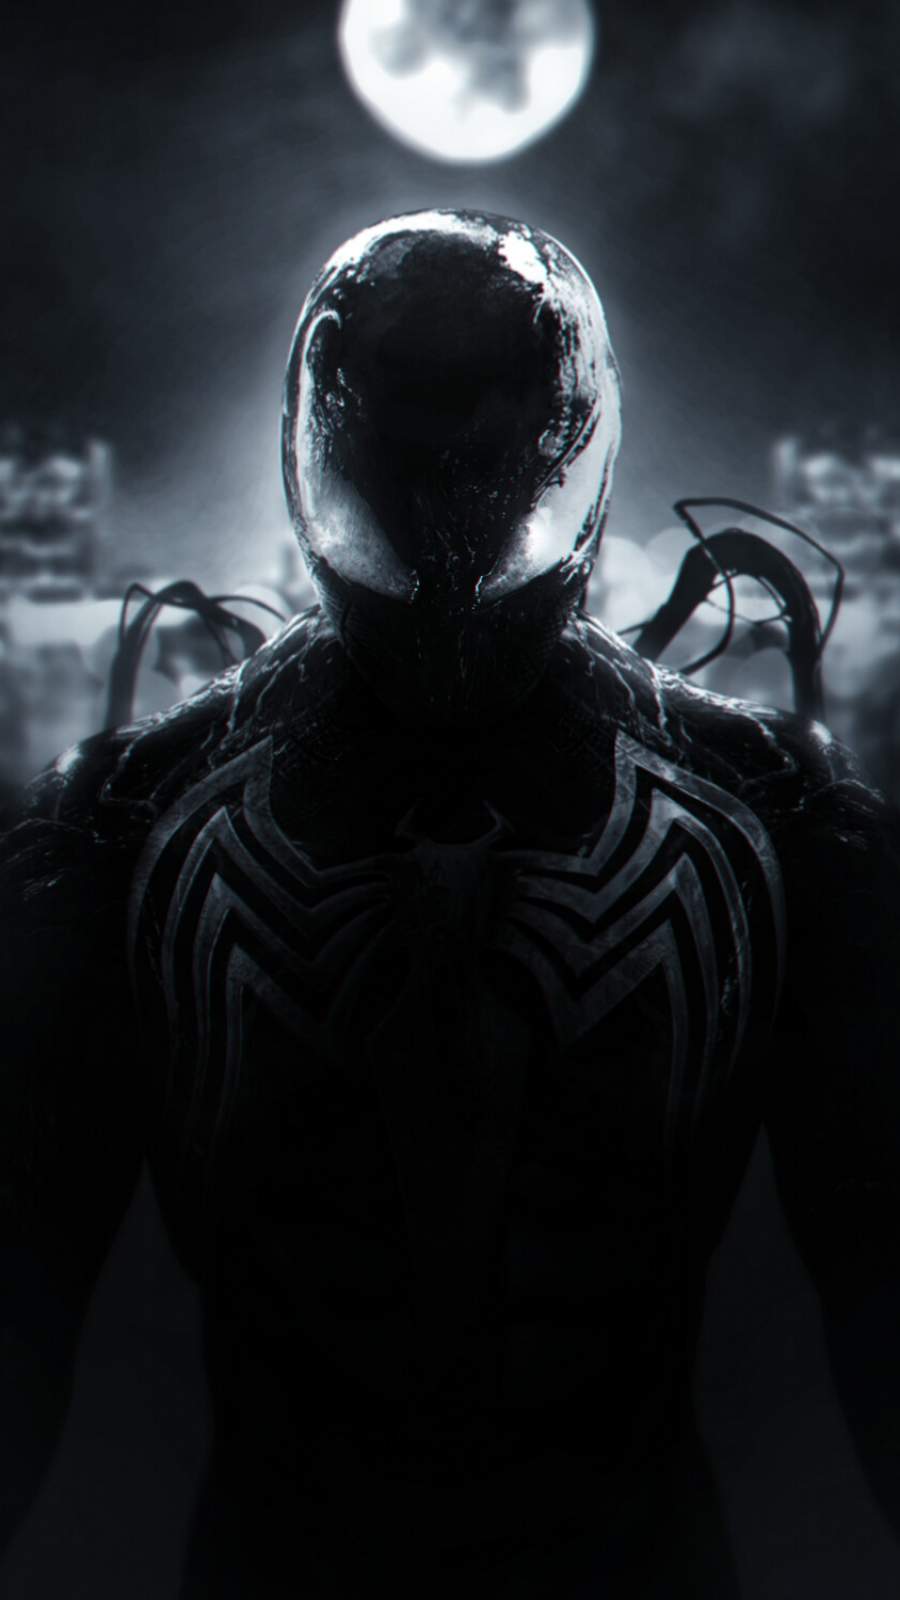 SpiderMan Toxin Symbiote Costume 4K Wallpaper 62163